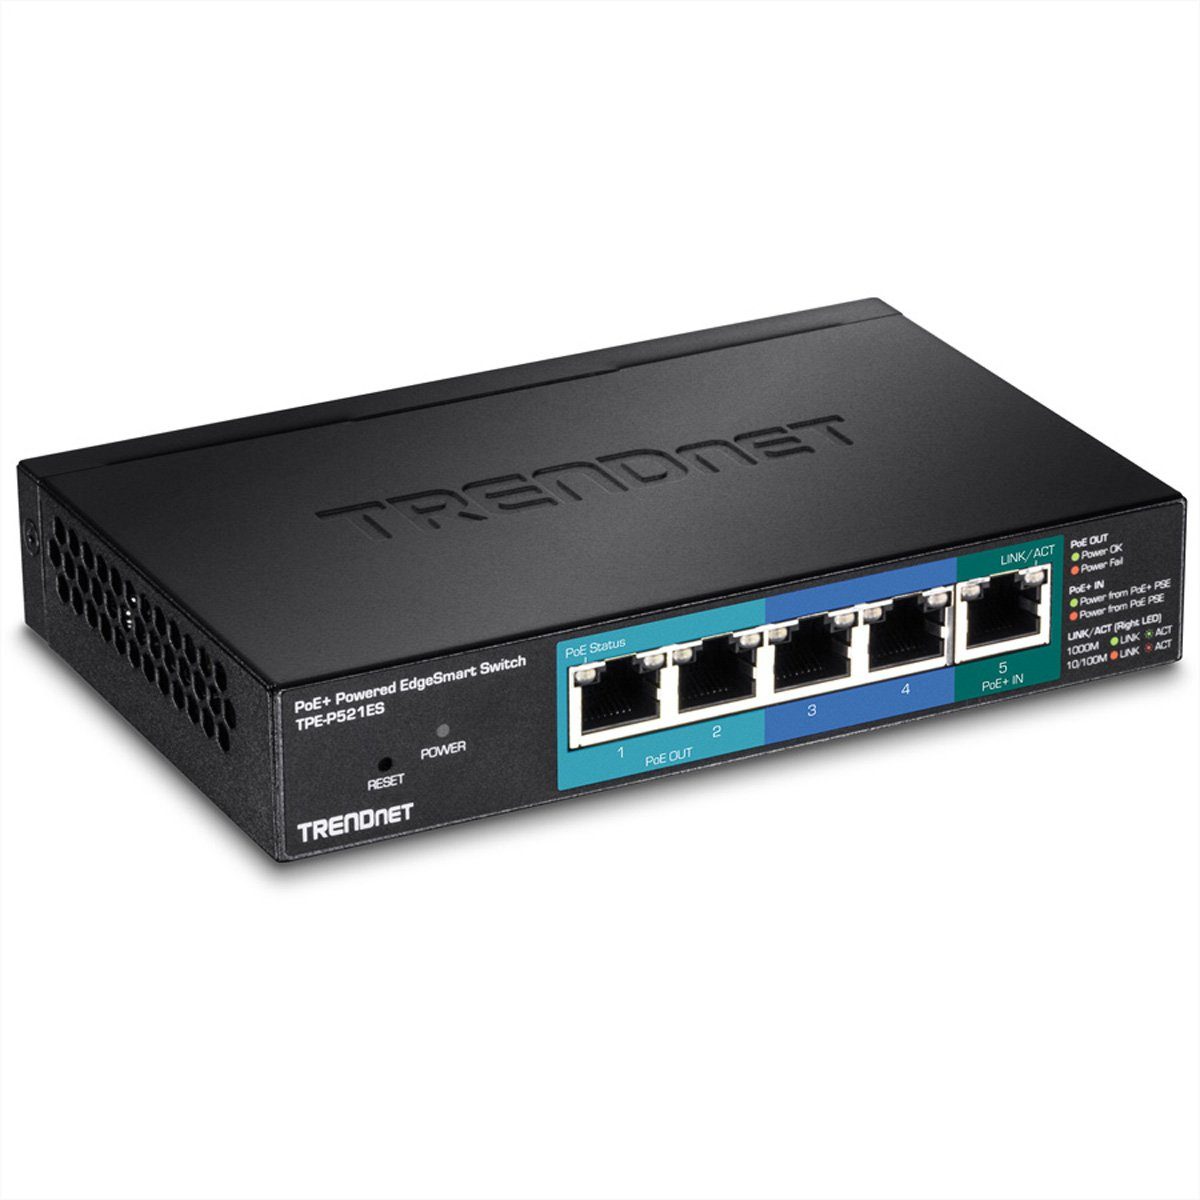 Trendnet 15W PoE 5Port Powered mit Gigabit Pass TPE-P521ES Through Netzwerk-Switch PoE+ Switch